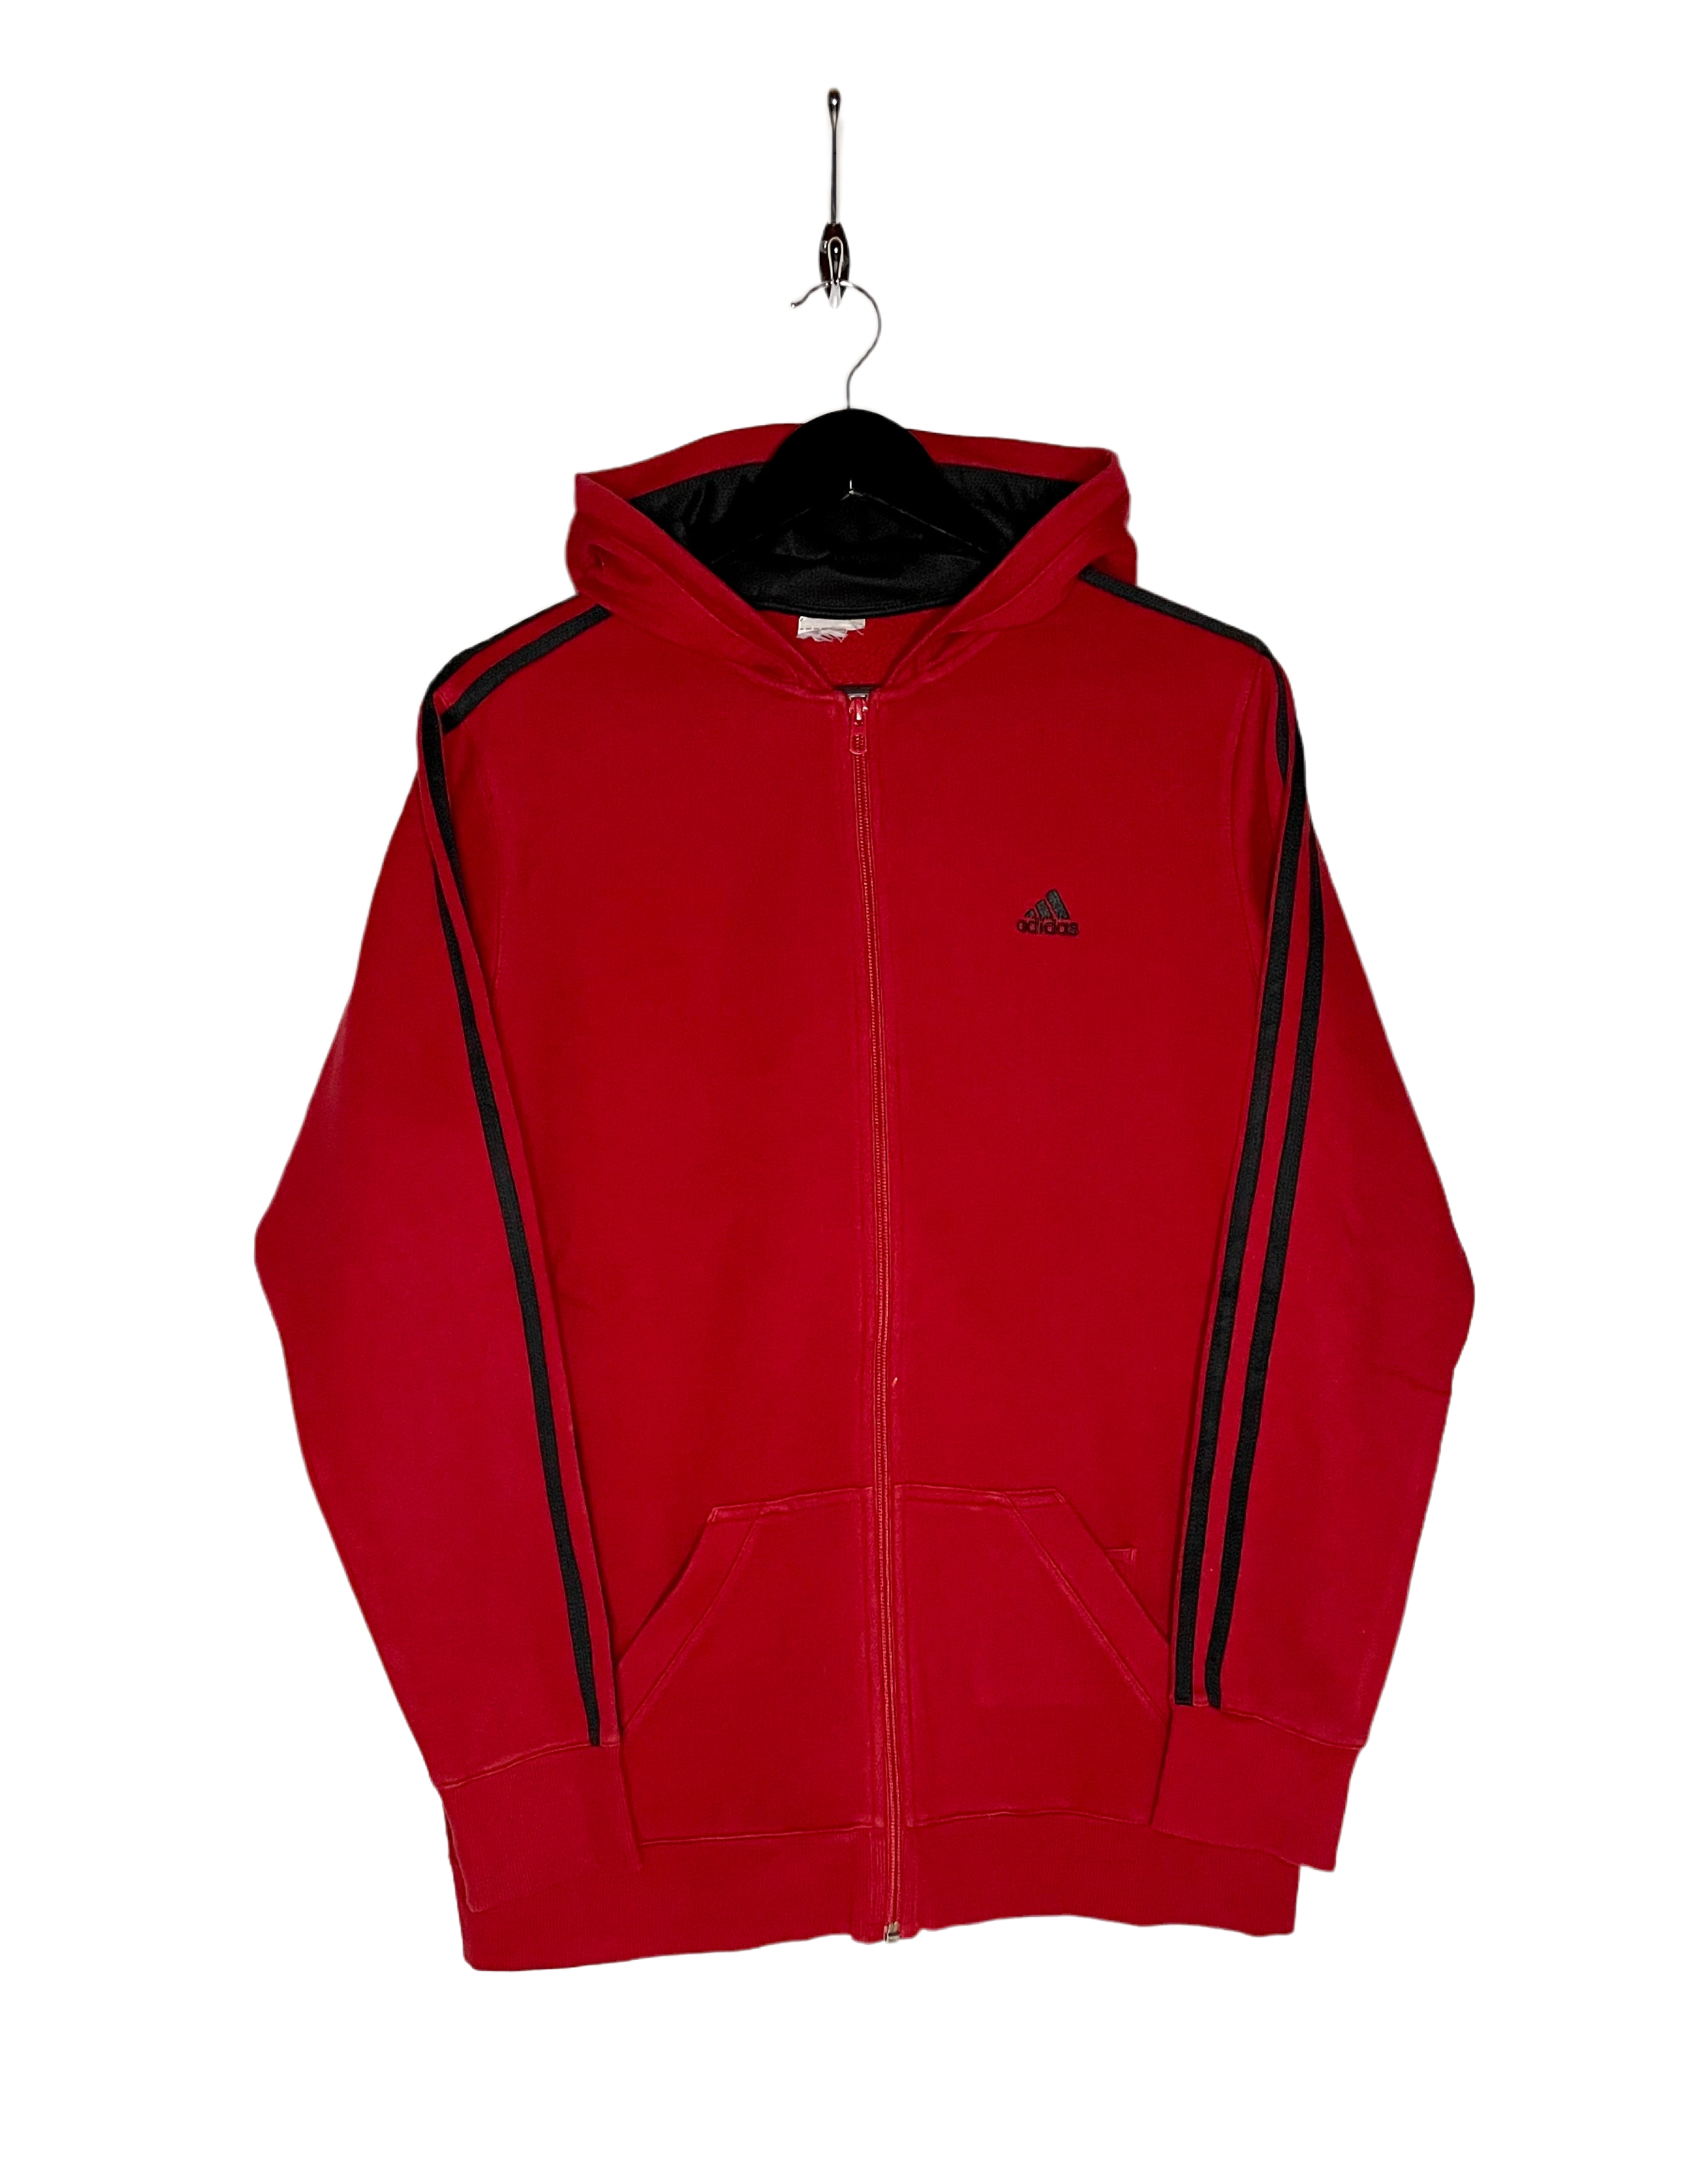 Adidas Vintage Zip Hoodie Red Size M